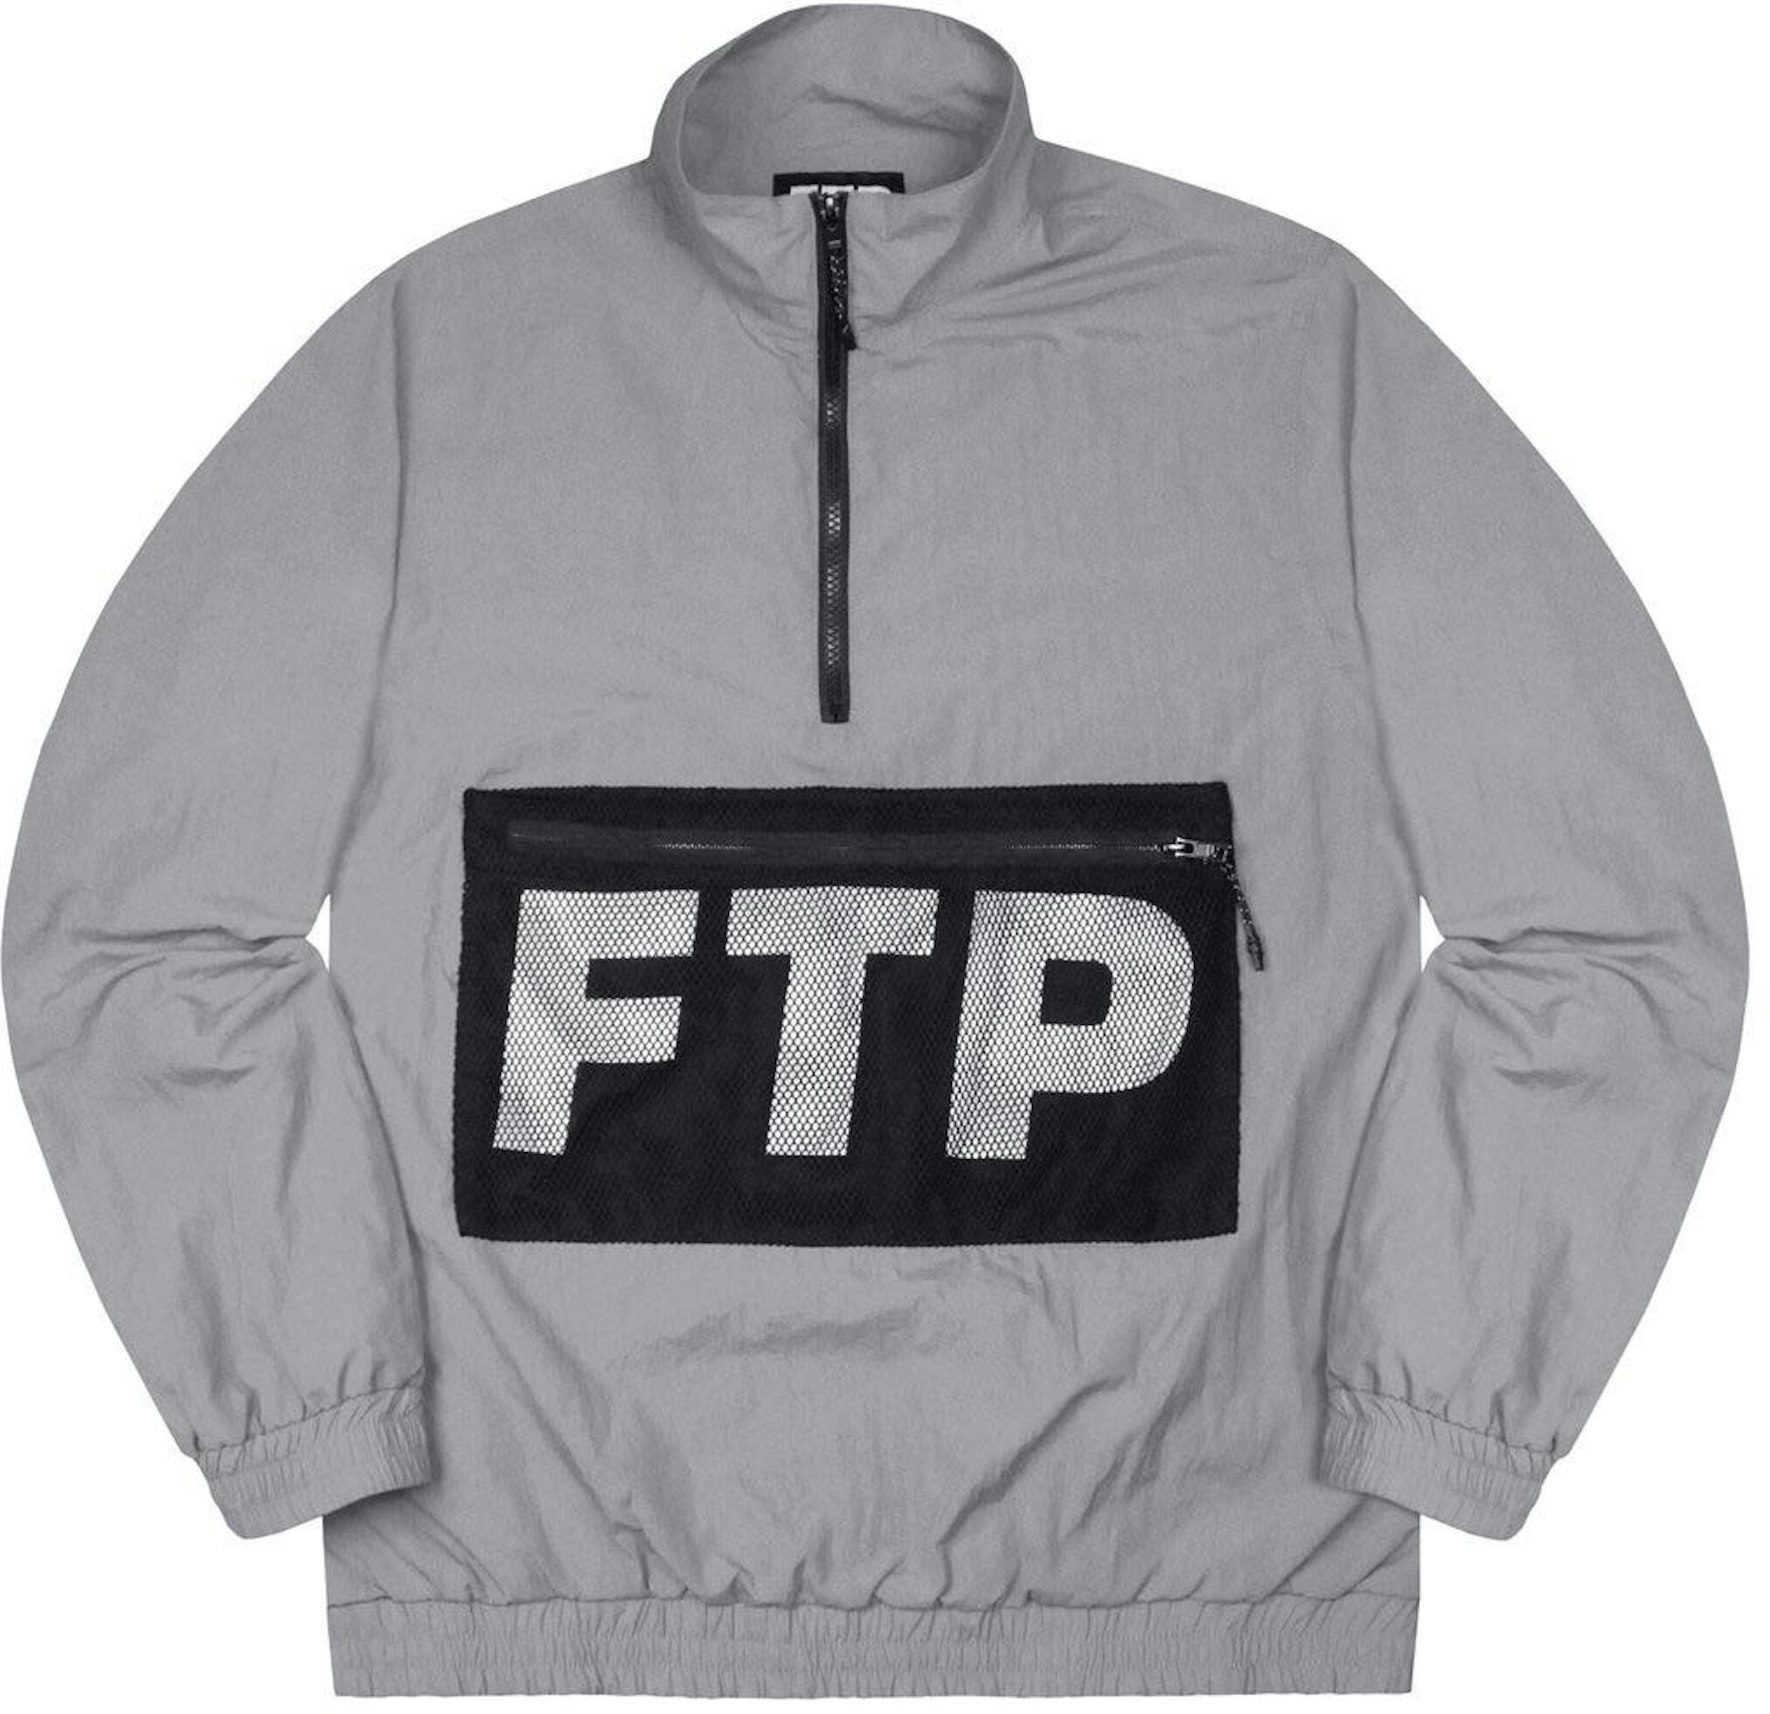 FTP Mesh Pocket Half Zip Gray - SS19 男士- TW